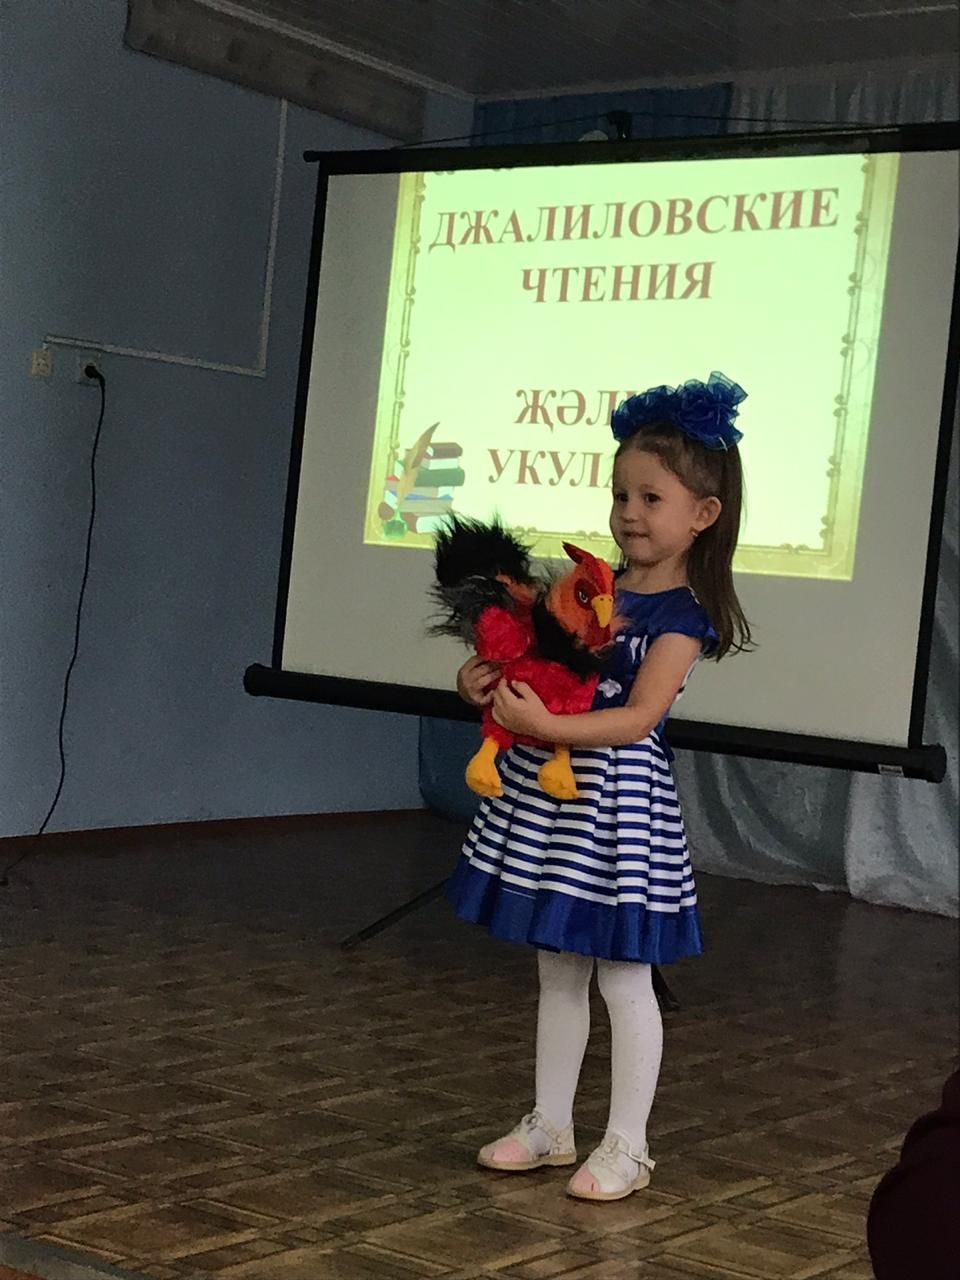 В Азнакаево прошел районный конкурс “Джалиловские чтения”